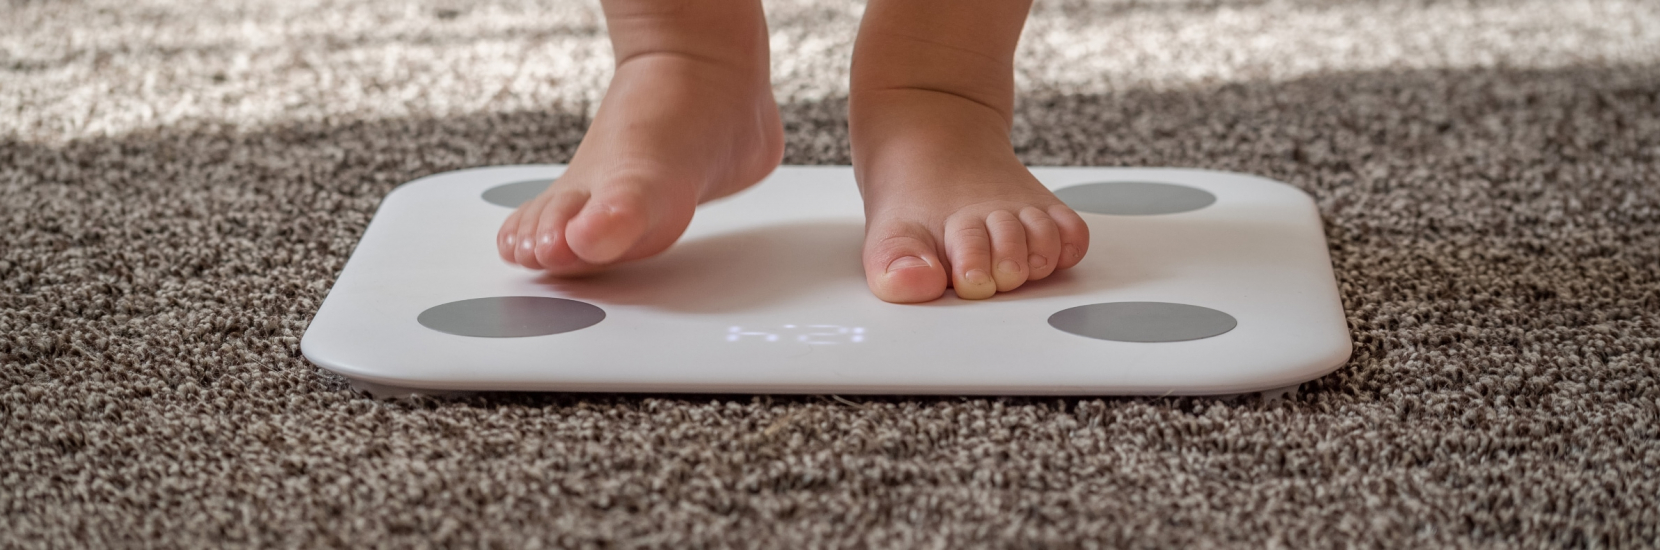 Prise en charge de l’obésité infantile au Luxembourg : 5 questions au Dr Ghaddhab